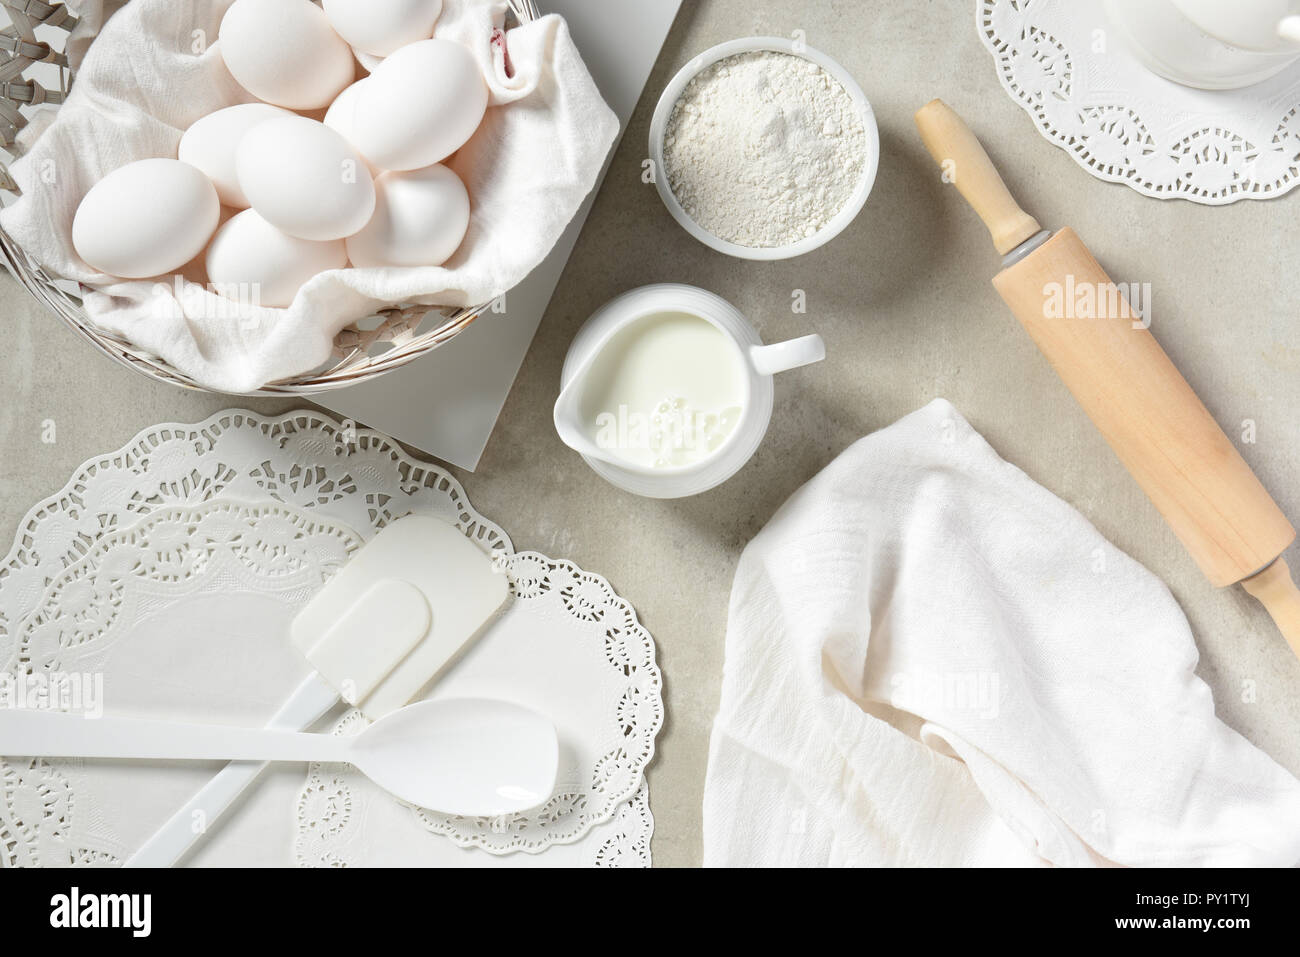 Plano de cocción laicos Still Life: artículos de cocina predominantemente blanca para hornear. Foto de stock